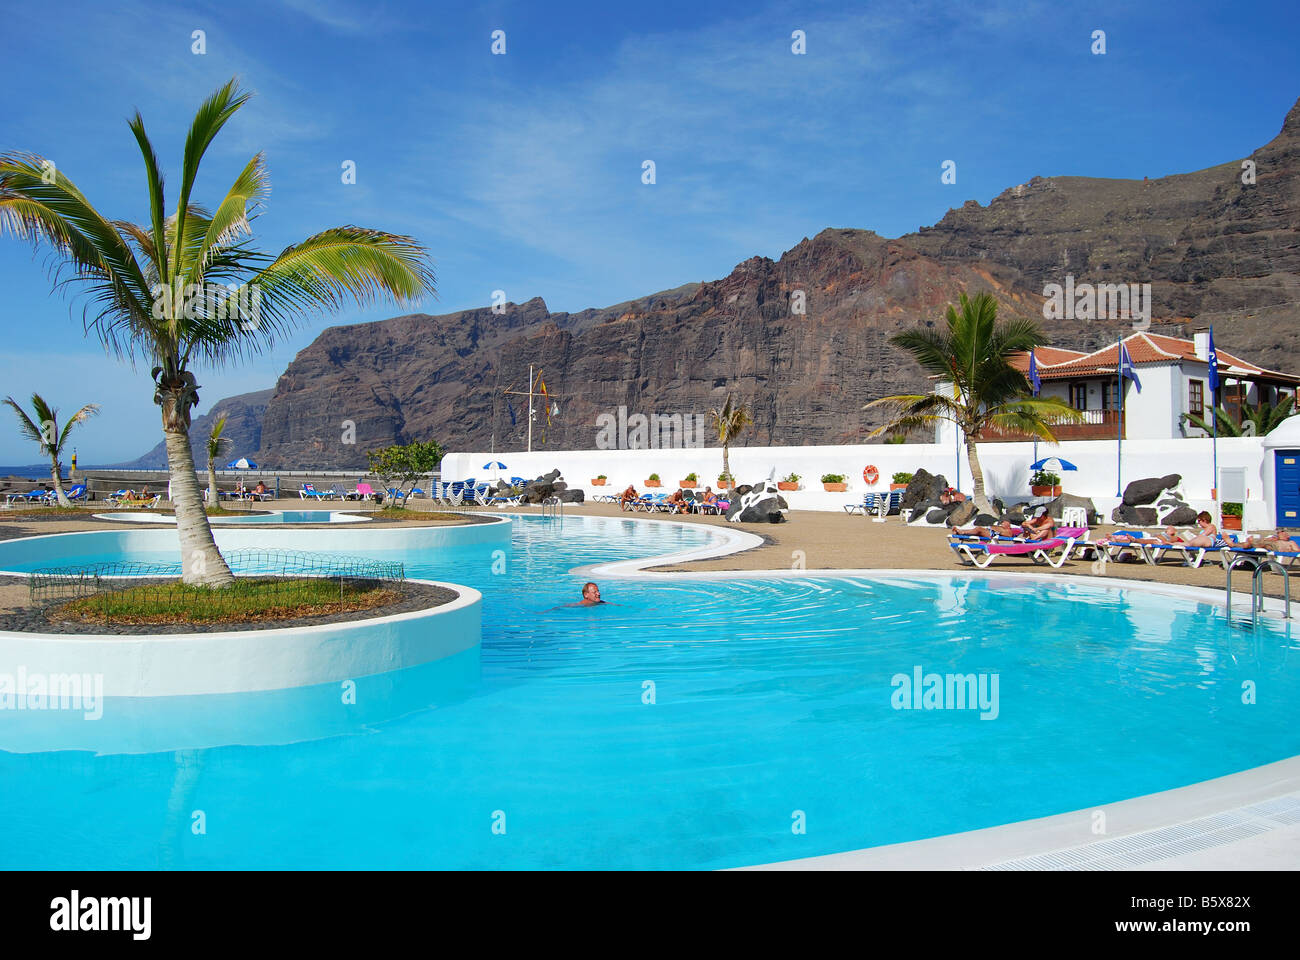 Lido pool showing Acantilados de Los Gigantes, Santiago del Teide, Tenerife, Canary Islands, Spain Stock Photo